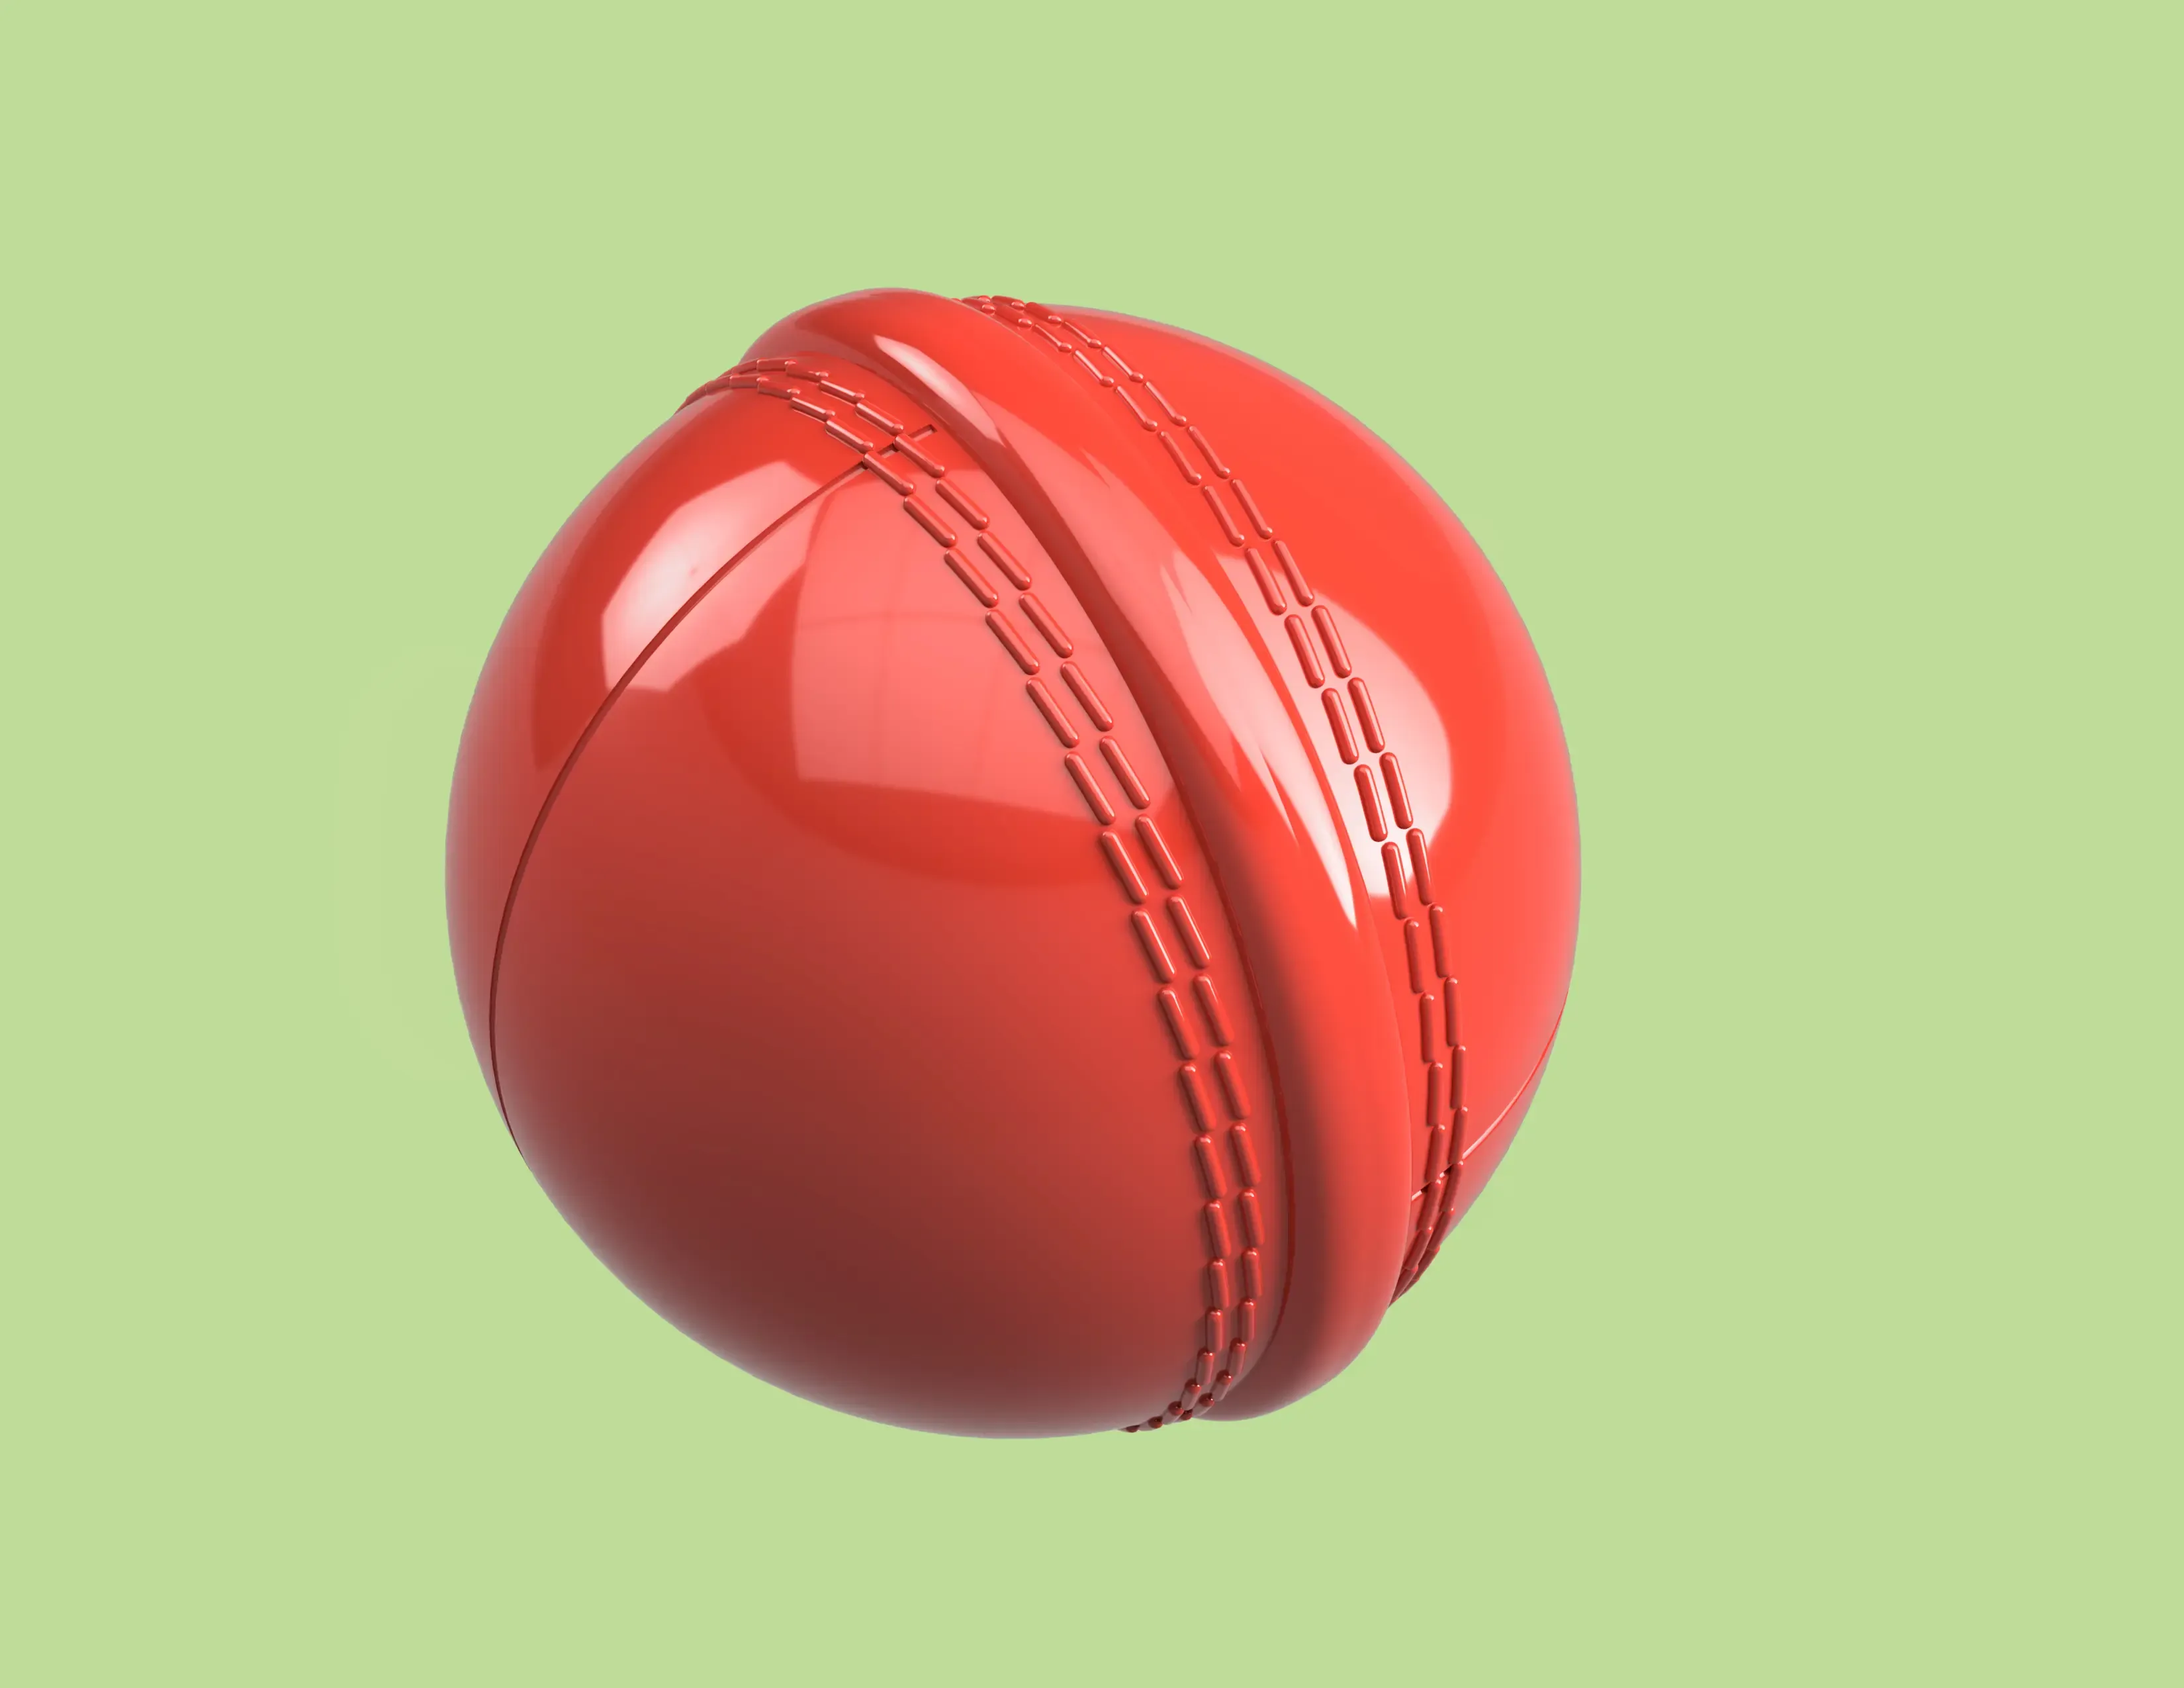 Cricket Ball Secret Stasher